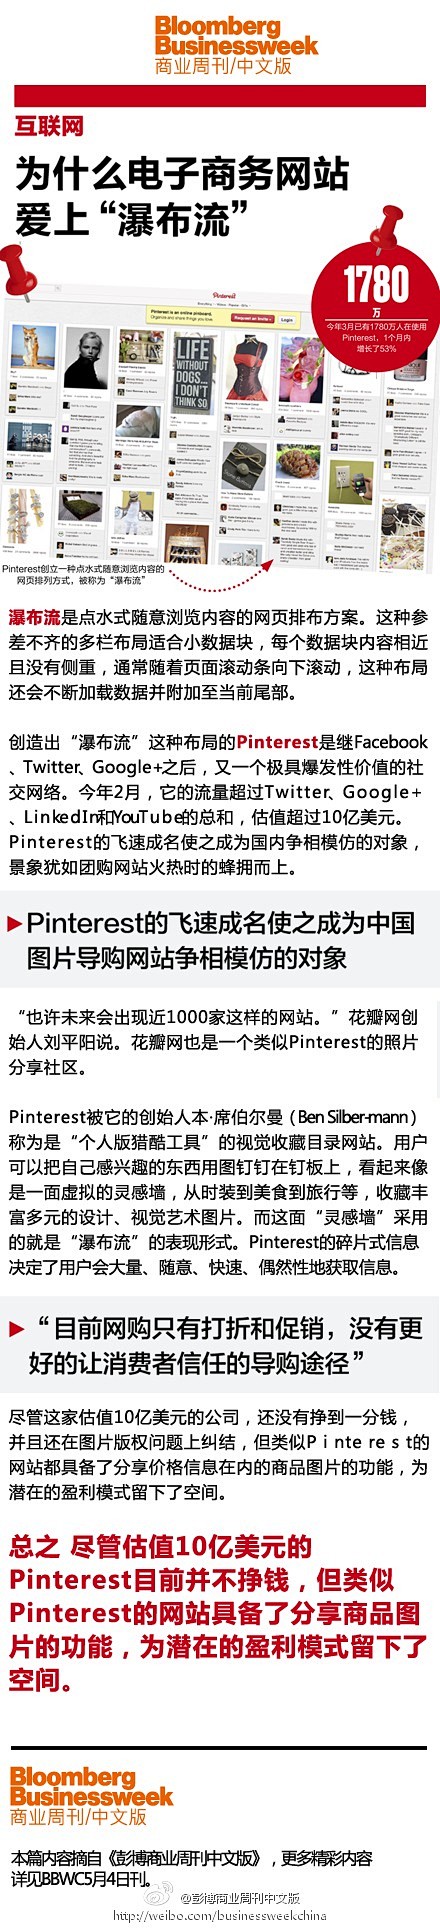 彭博商业周刊中文版：【Pinterest...